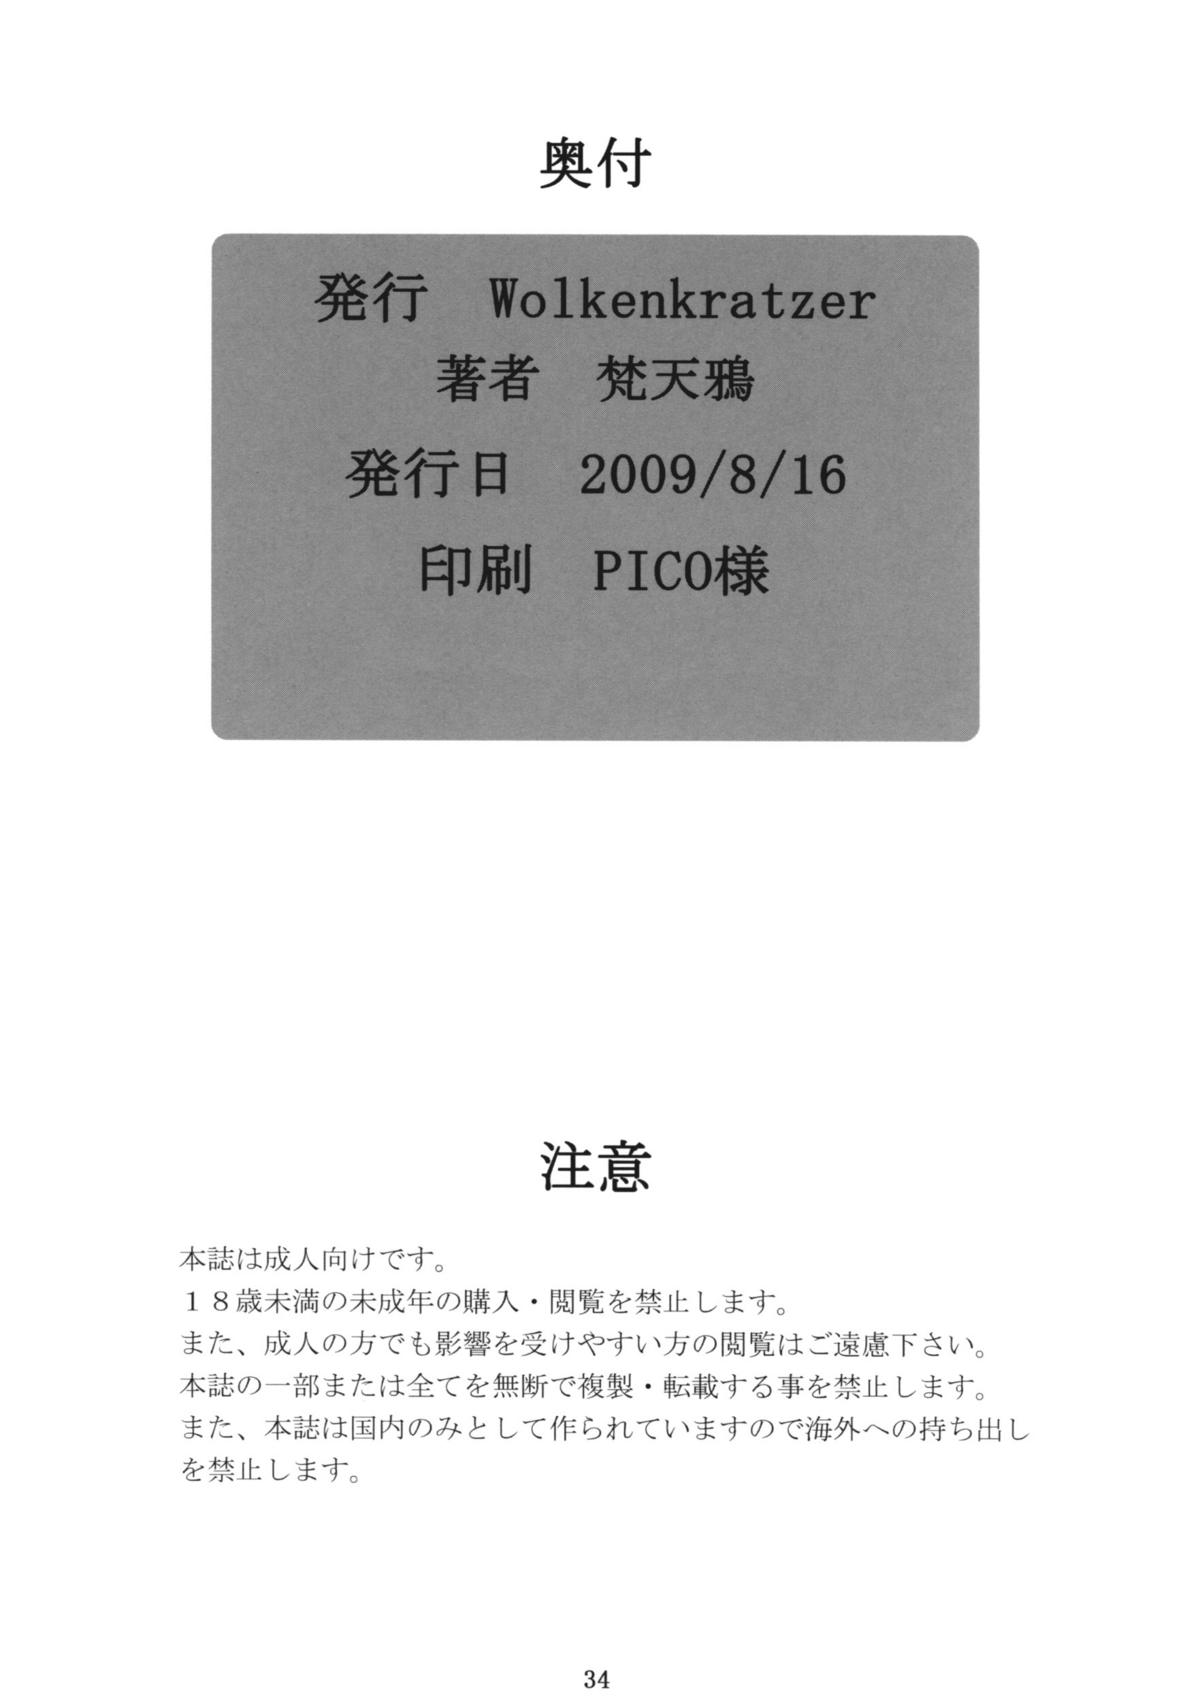 (C76) [Wolkenkratzer (bontenkarasu)] Decadence Soul  (soul calibur) (C76) [Wolkenkratzer (梵天鴉)] Decadence Soul  (ソウルキャリバー)